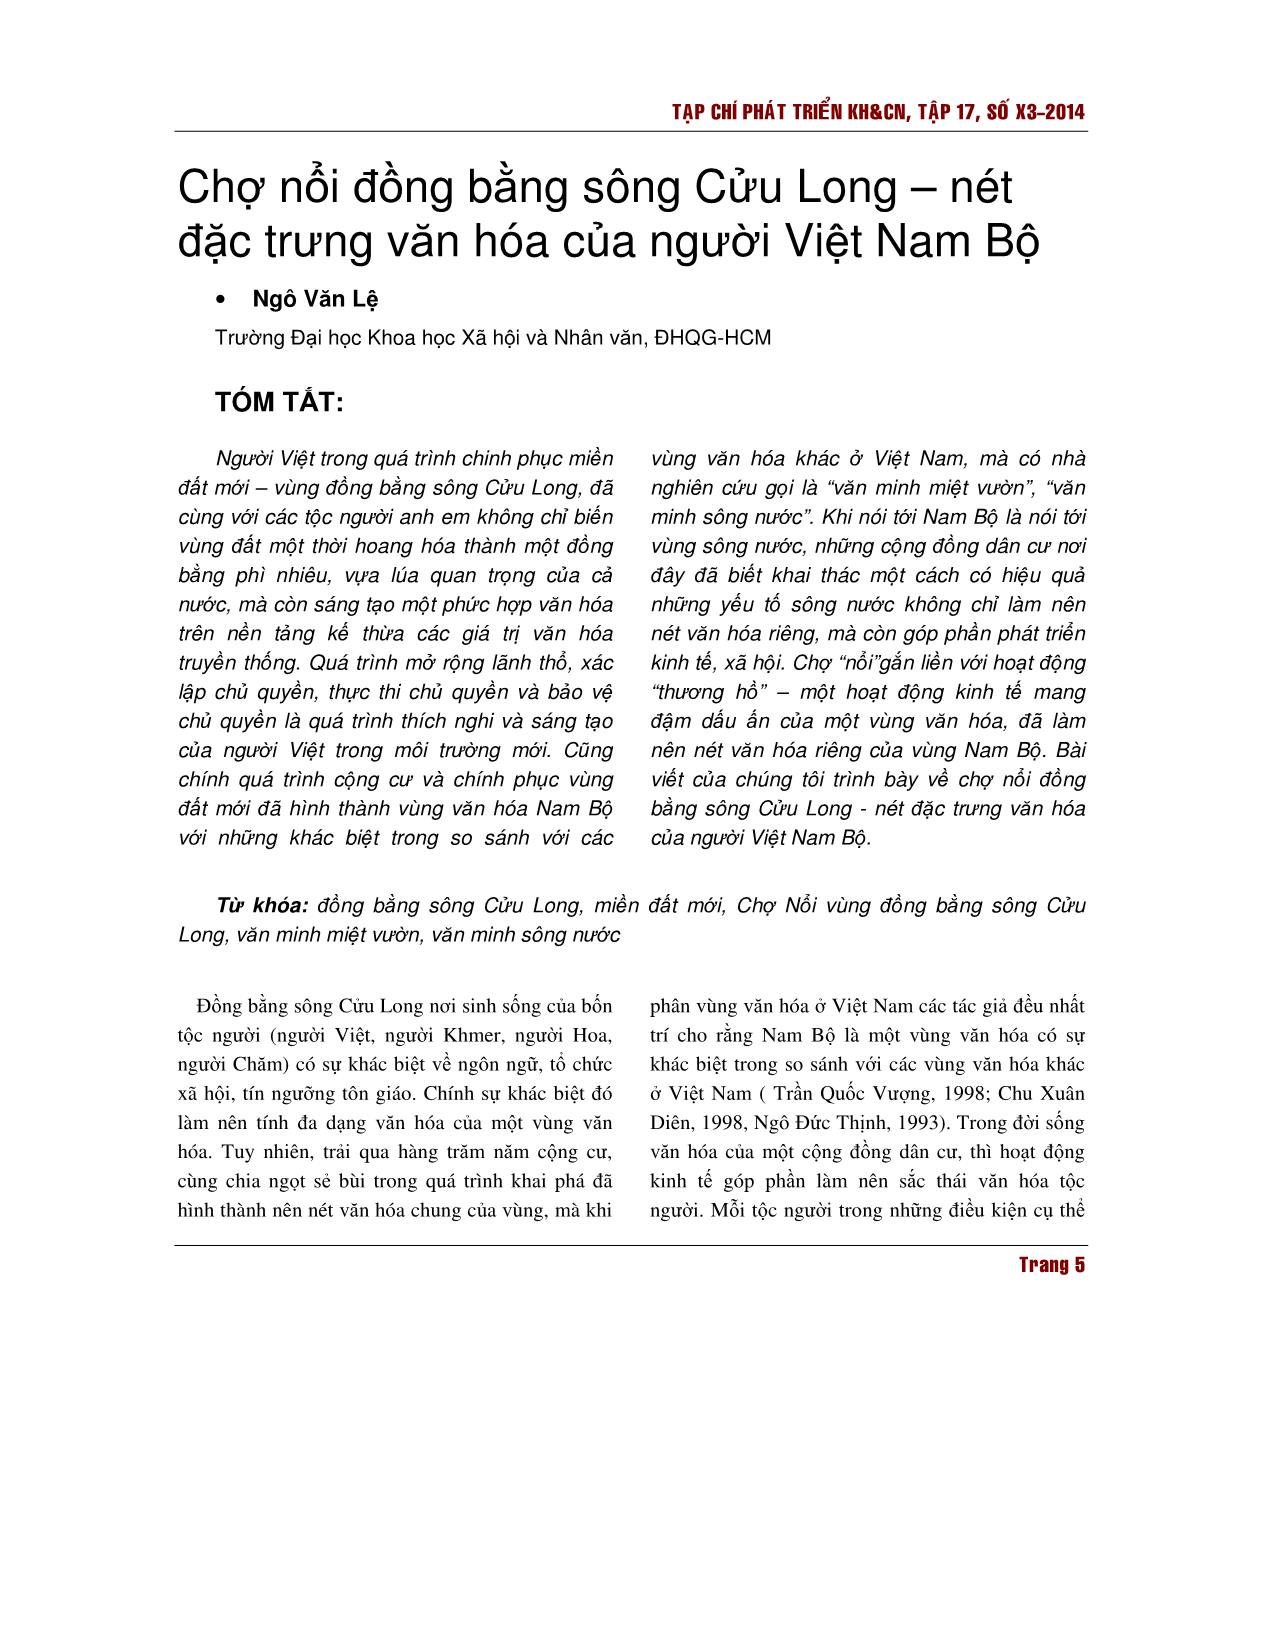 Chợ nổi đồng bằng sông Cửu Long – nét đặc trưng văn hóa của người Việt Nam Bộ trang 1